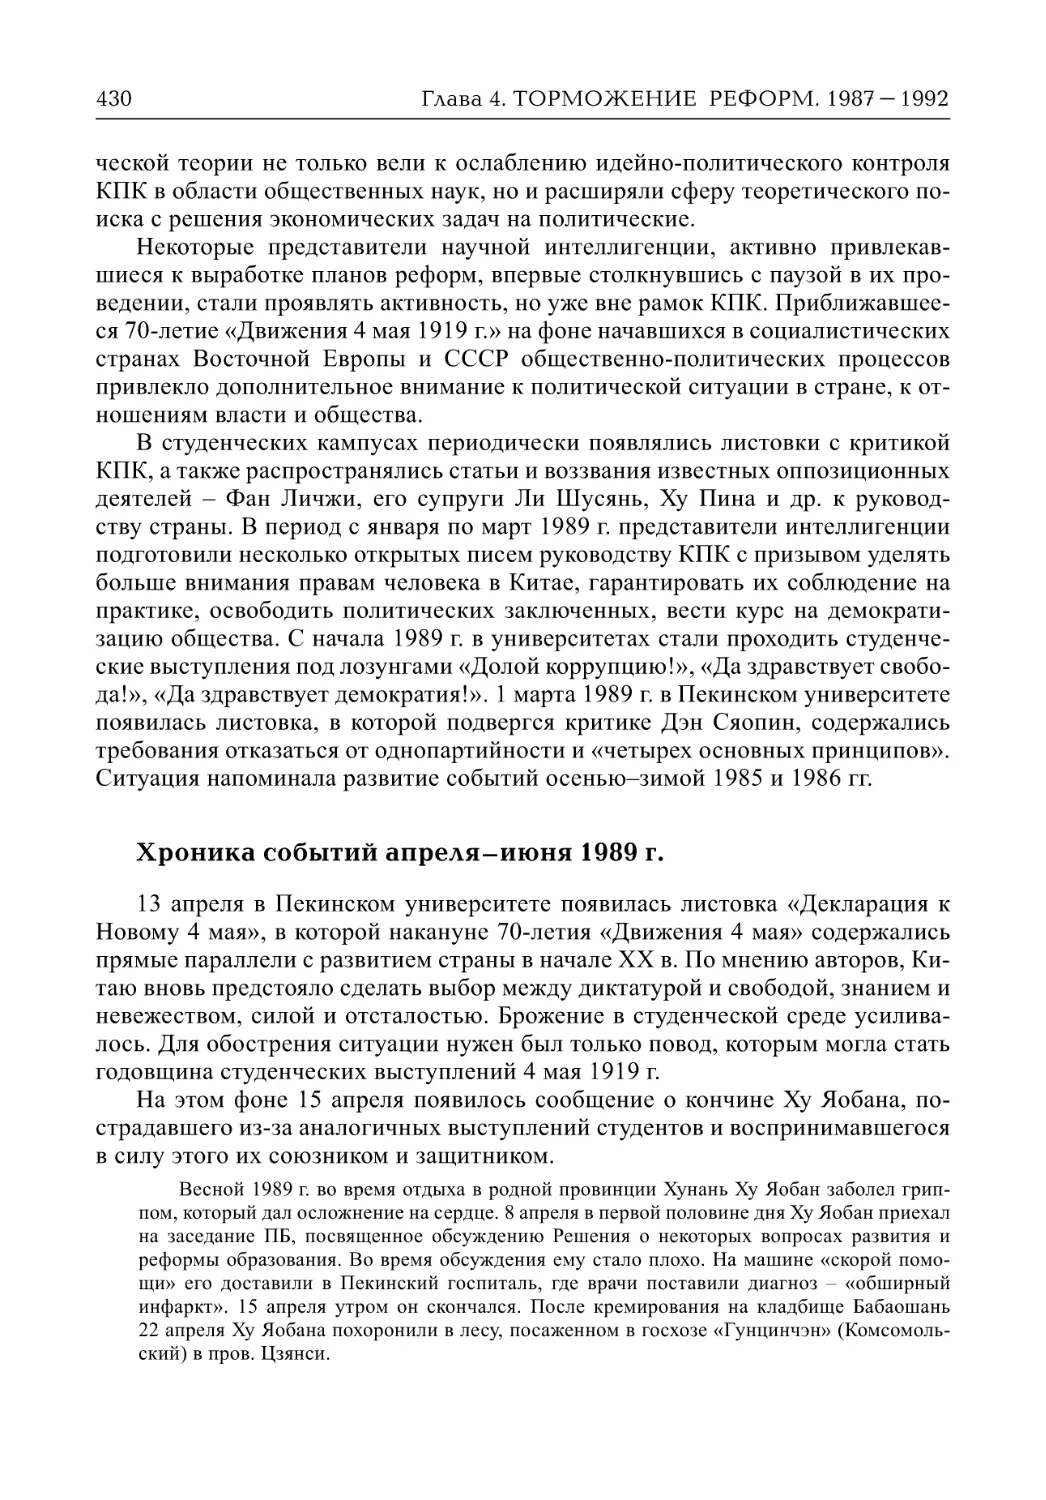 Хроника событий апреля – июня 1989 г. (А.В. Виноградов)